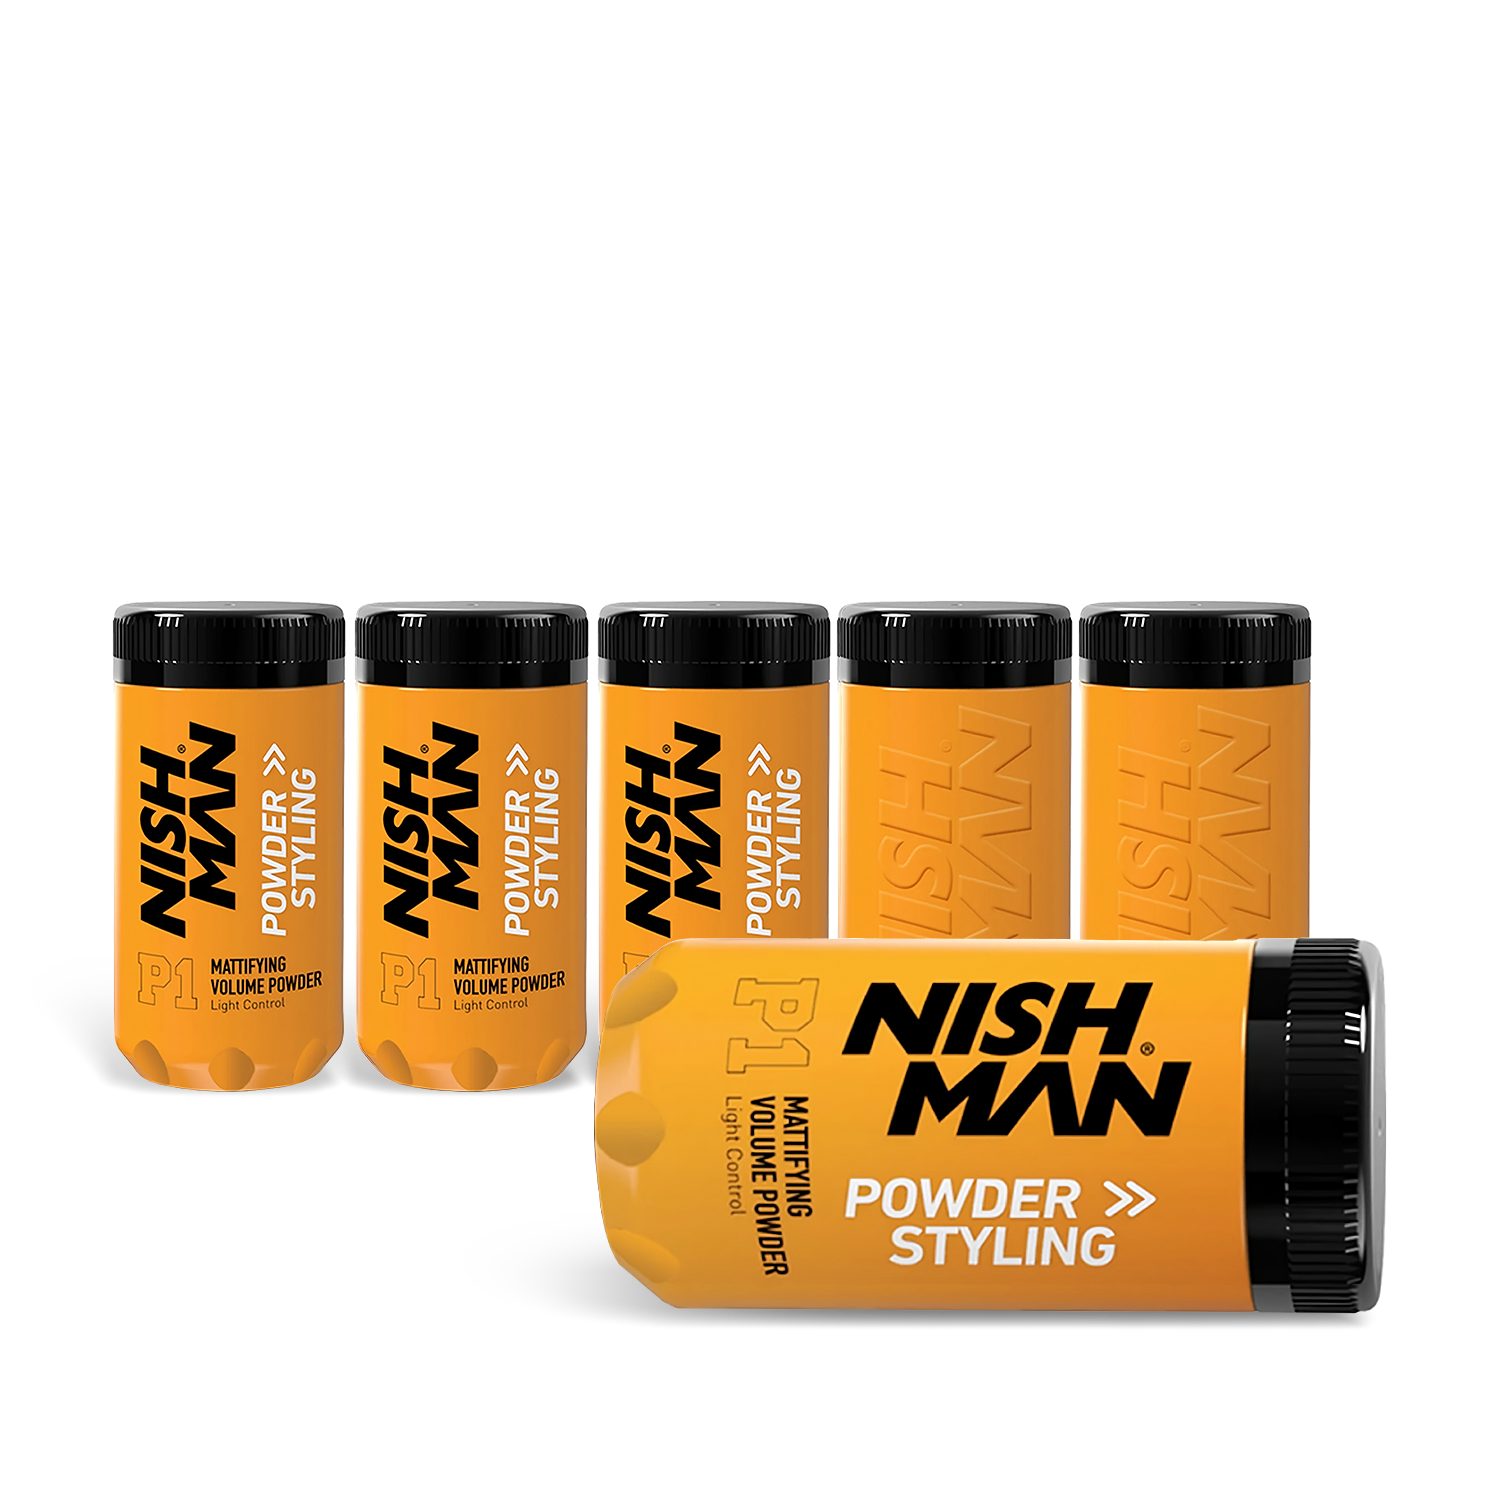 Powder Wax NISH MAN x6